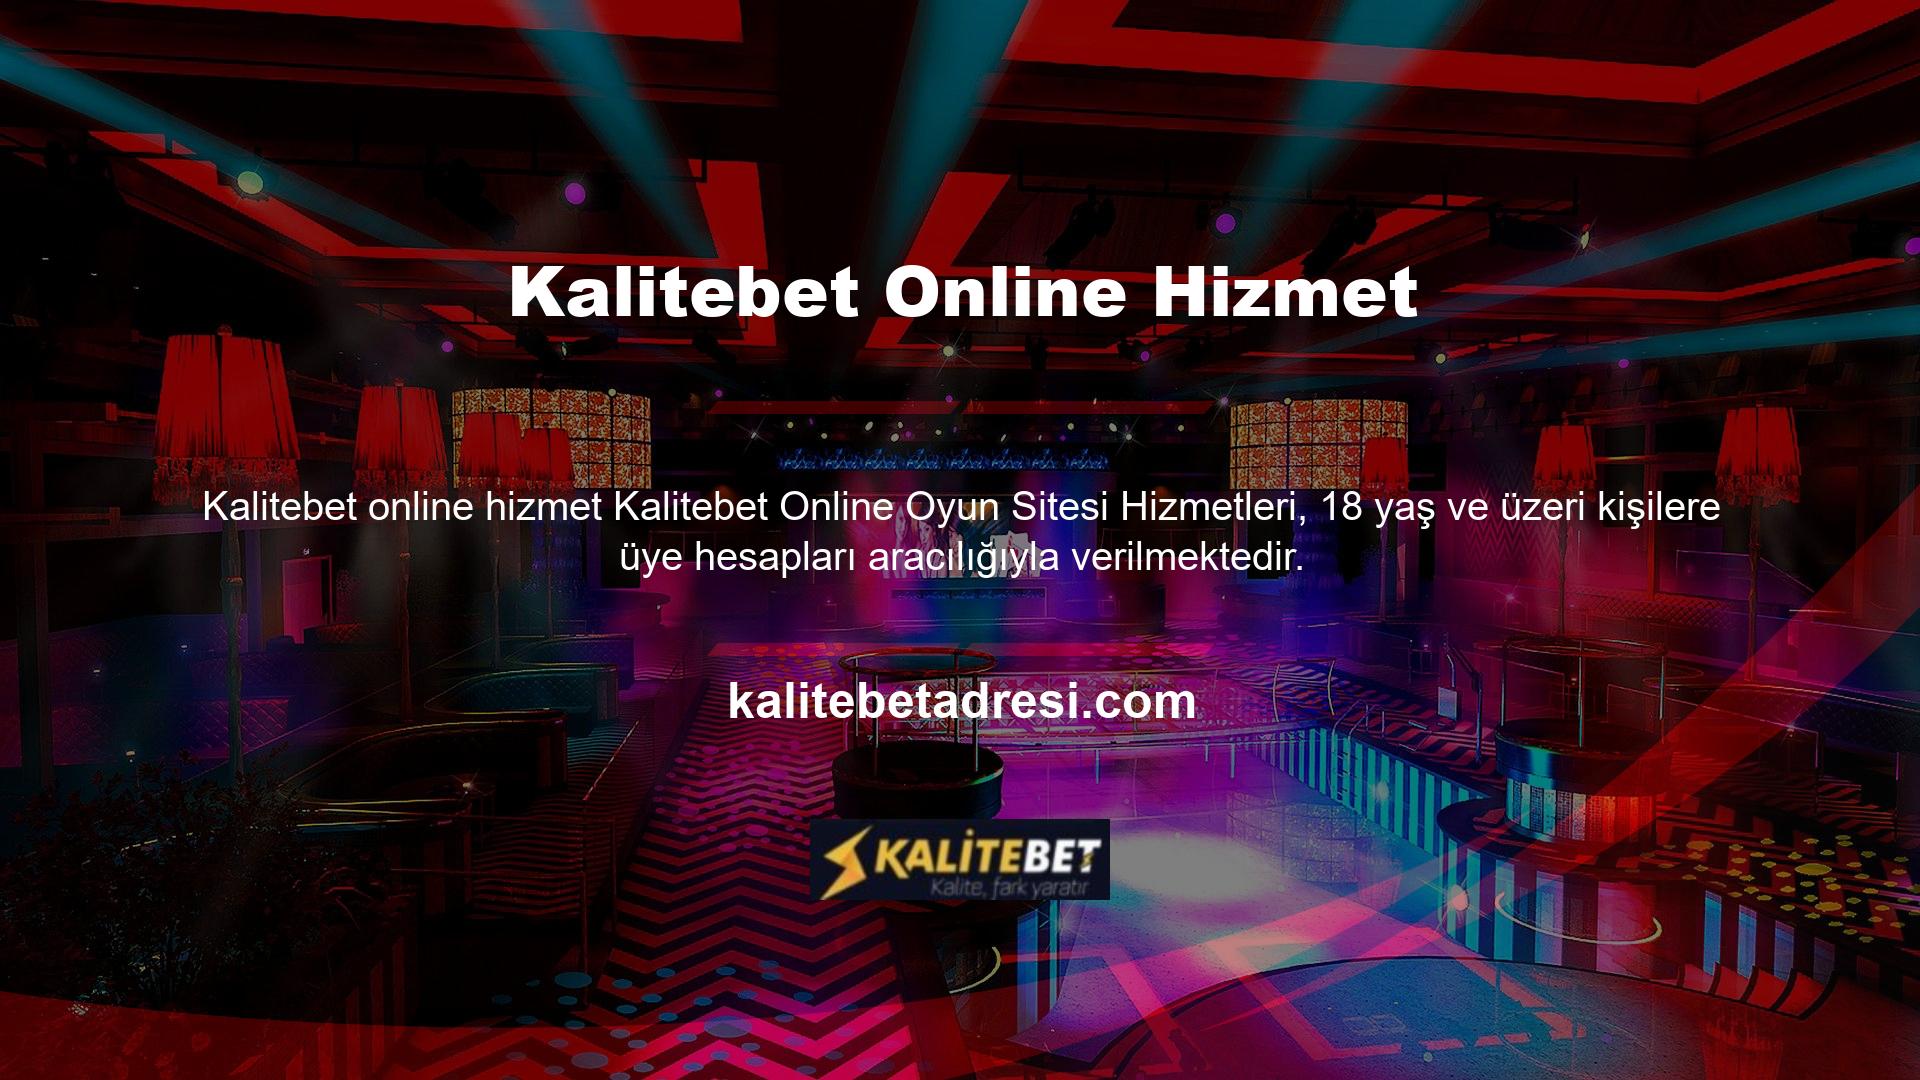 Online bahis oynamak isteyenler Kalitebet web sitesini ziyaret ederek güncel adreslerini ziyaret edebilir ve kayıt formunu doldurmaya başlayabilirler